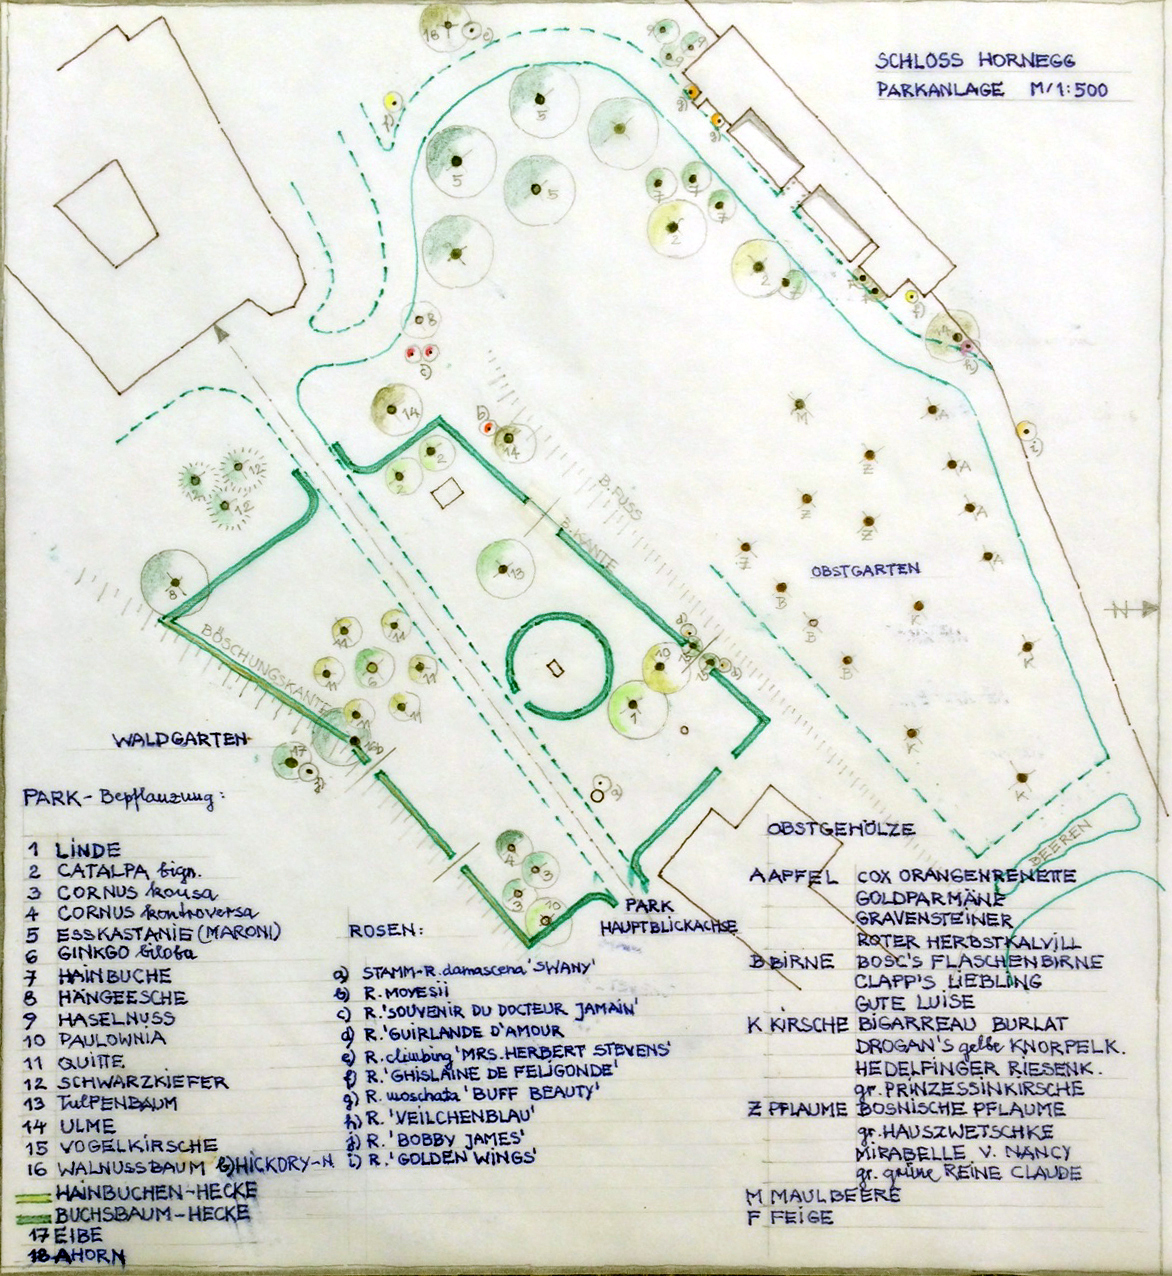 Handgezeichneter Plan Parkanlage Schloss Hornegg